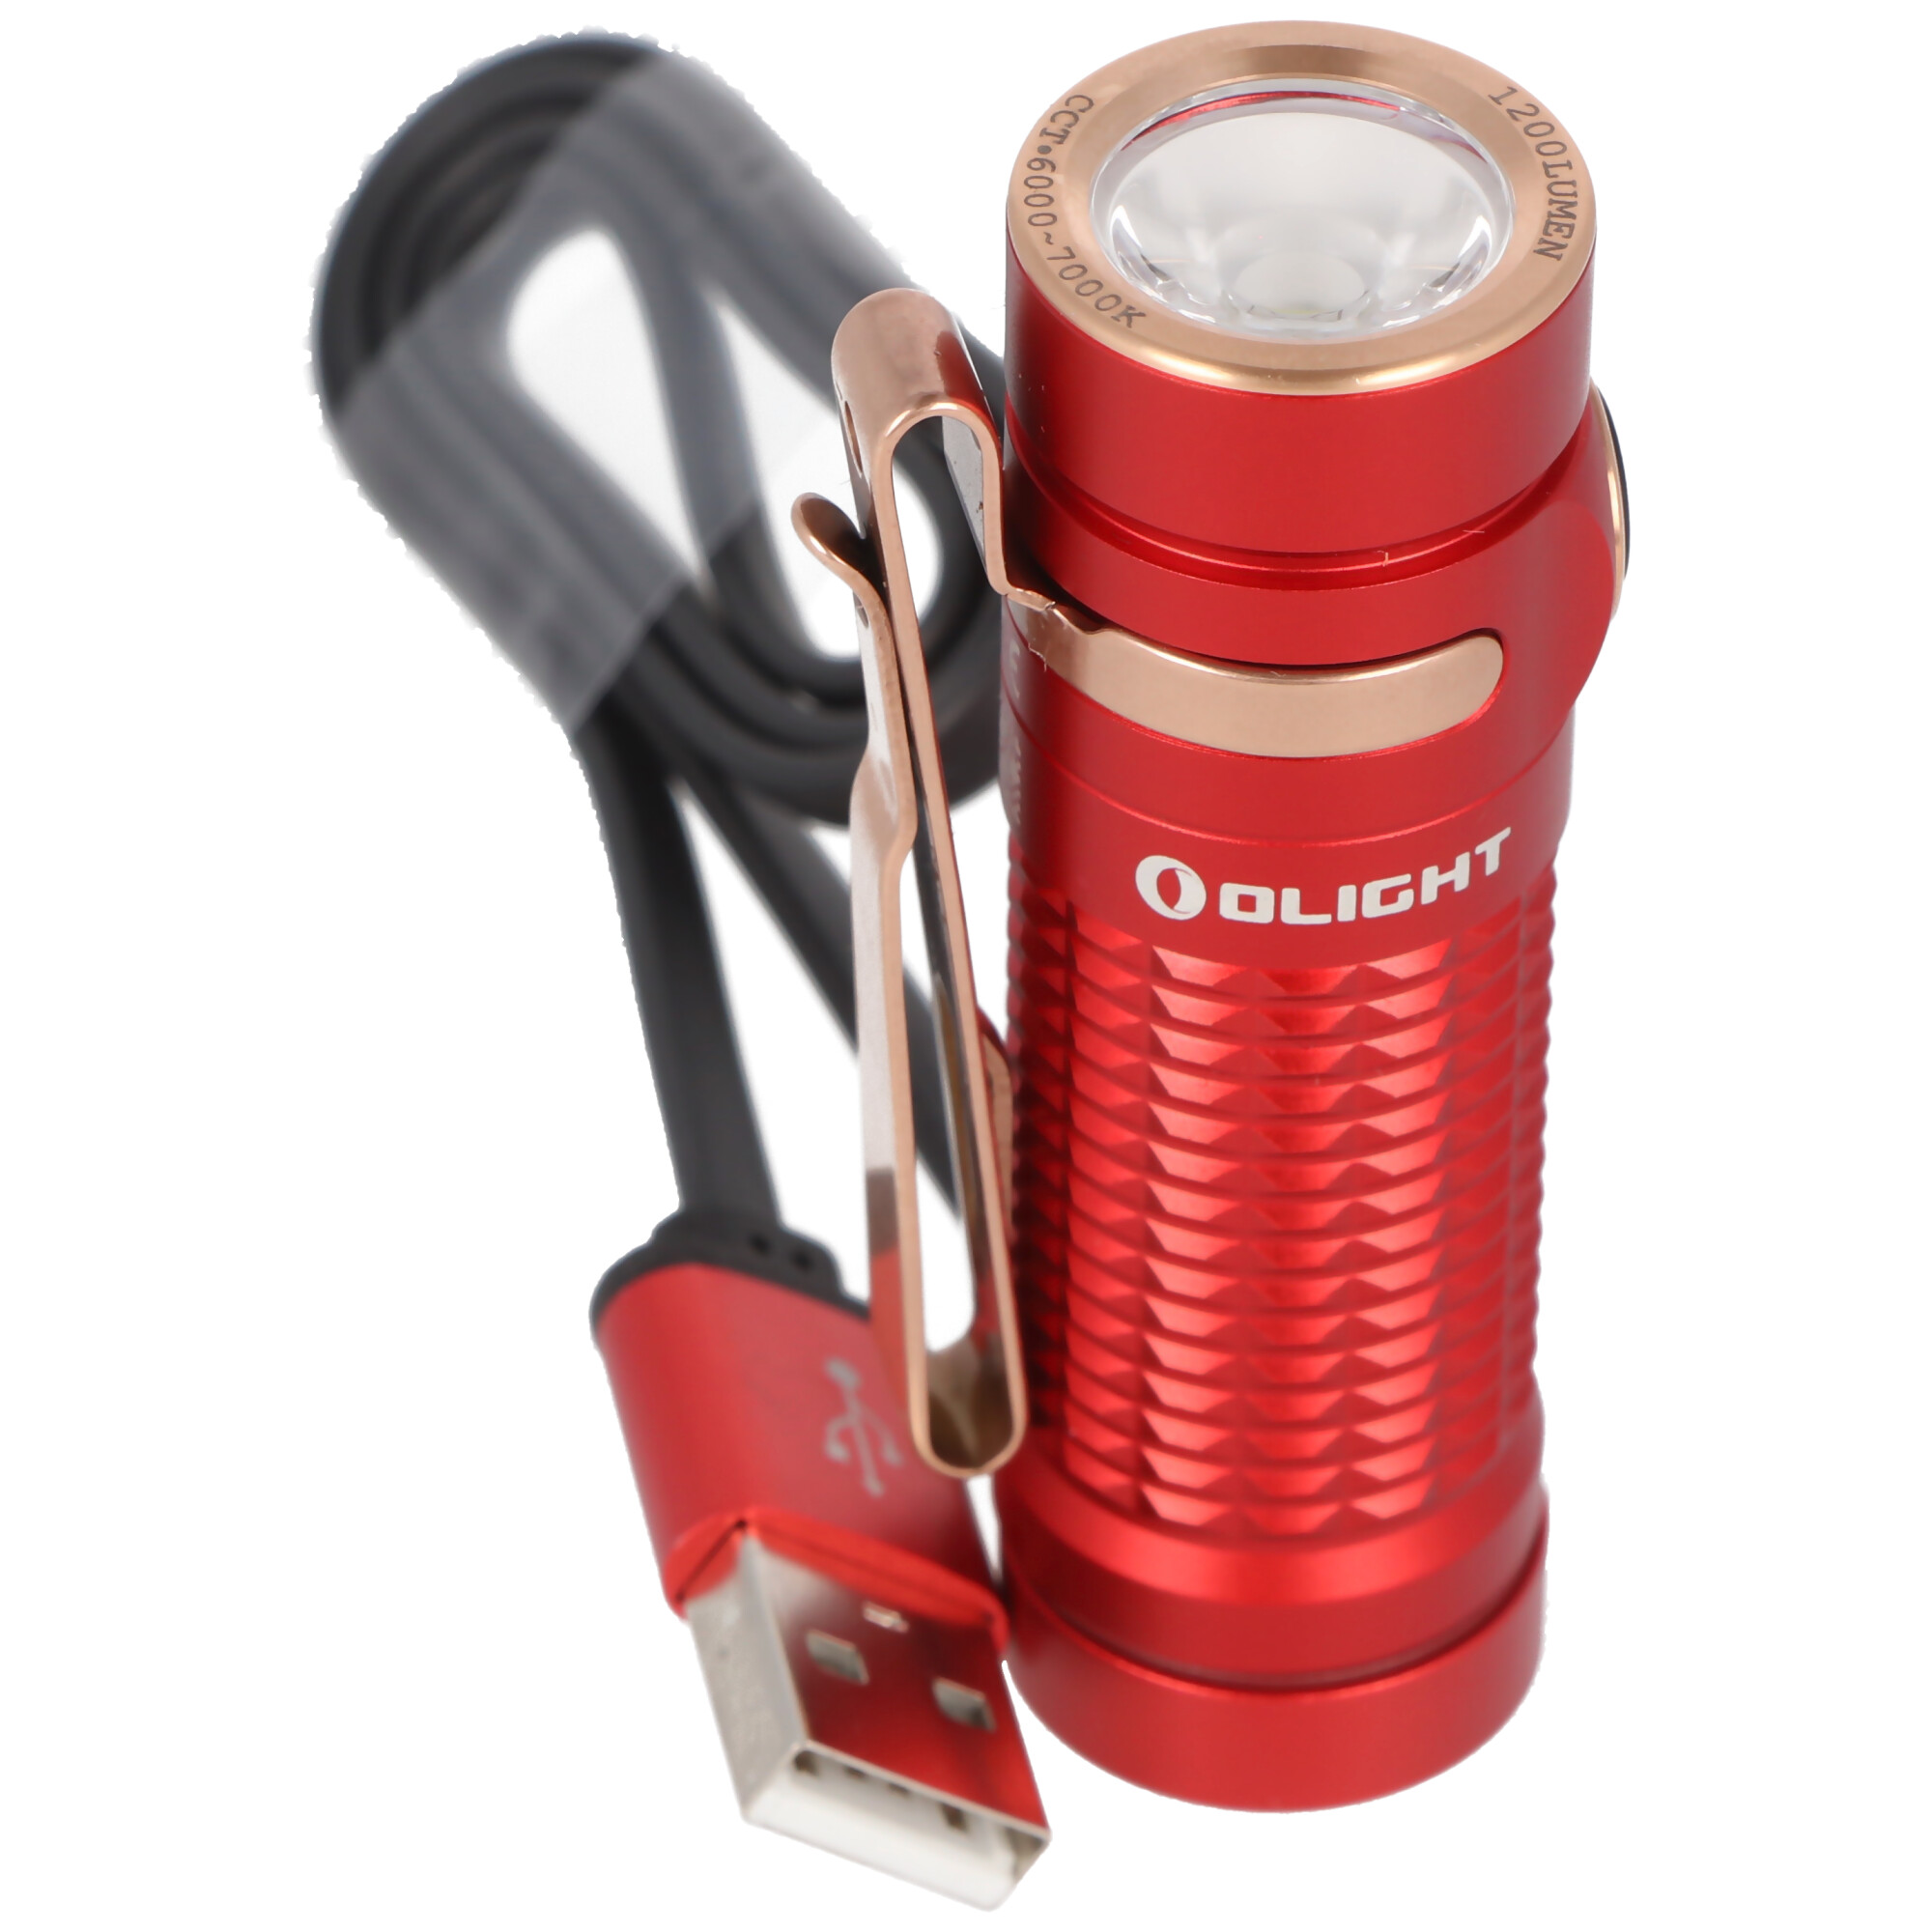 Olight Baton 3 LED-Taschenlampe, 1200 Lumen, wiederaufladbar, rutschfestes Texturdesign, inklusive IMR16340 3,7V 550mAh Akku und Ladekabel, rot